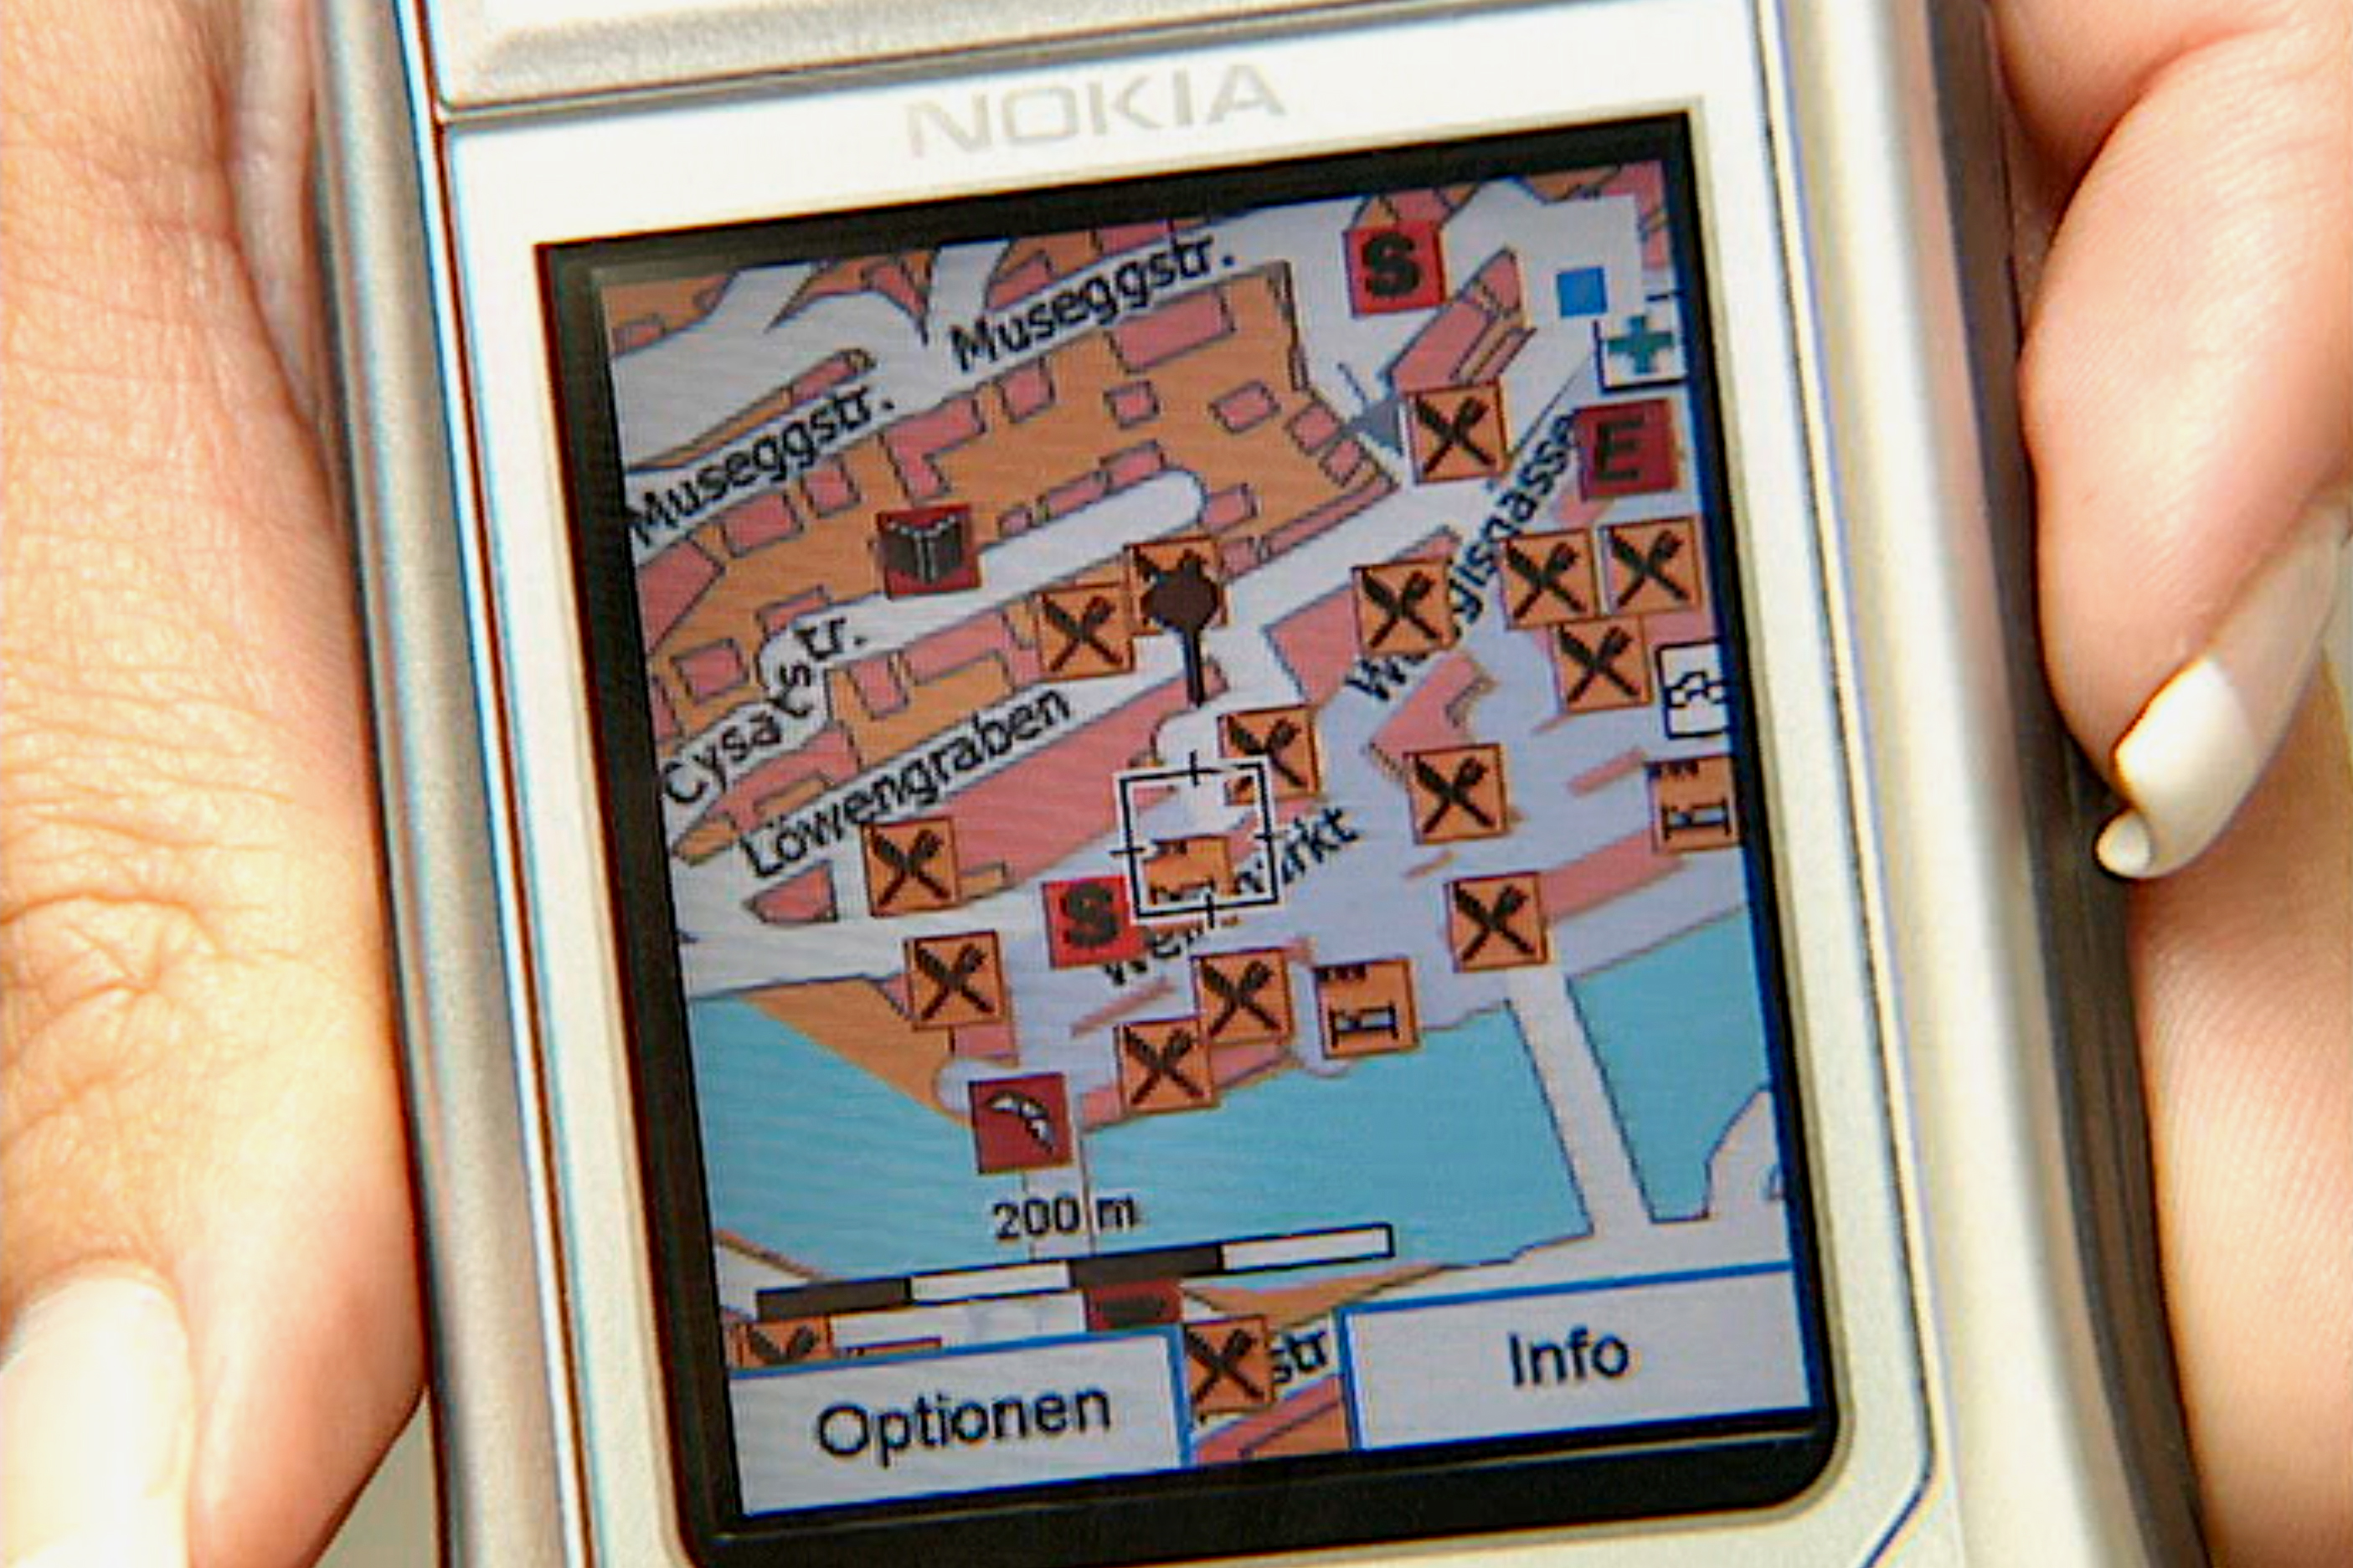 小さな携帯の画面に映し出された地図